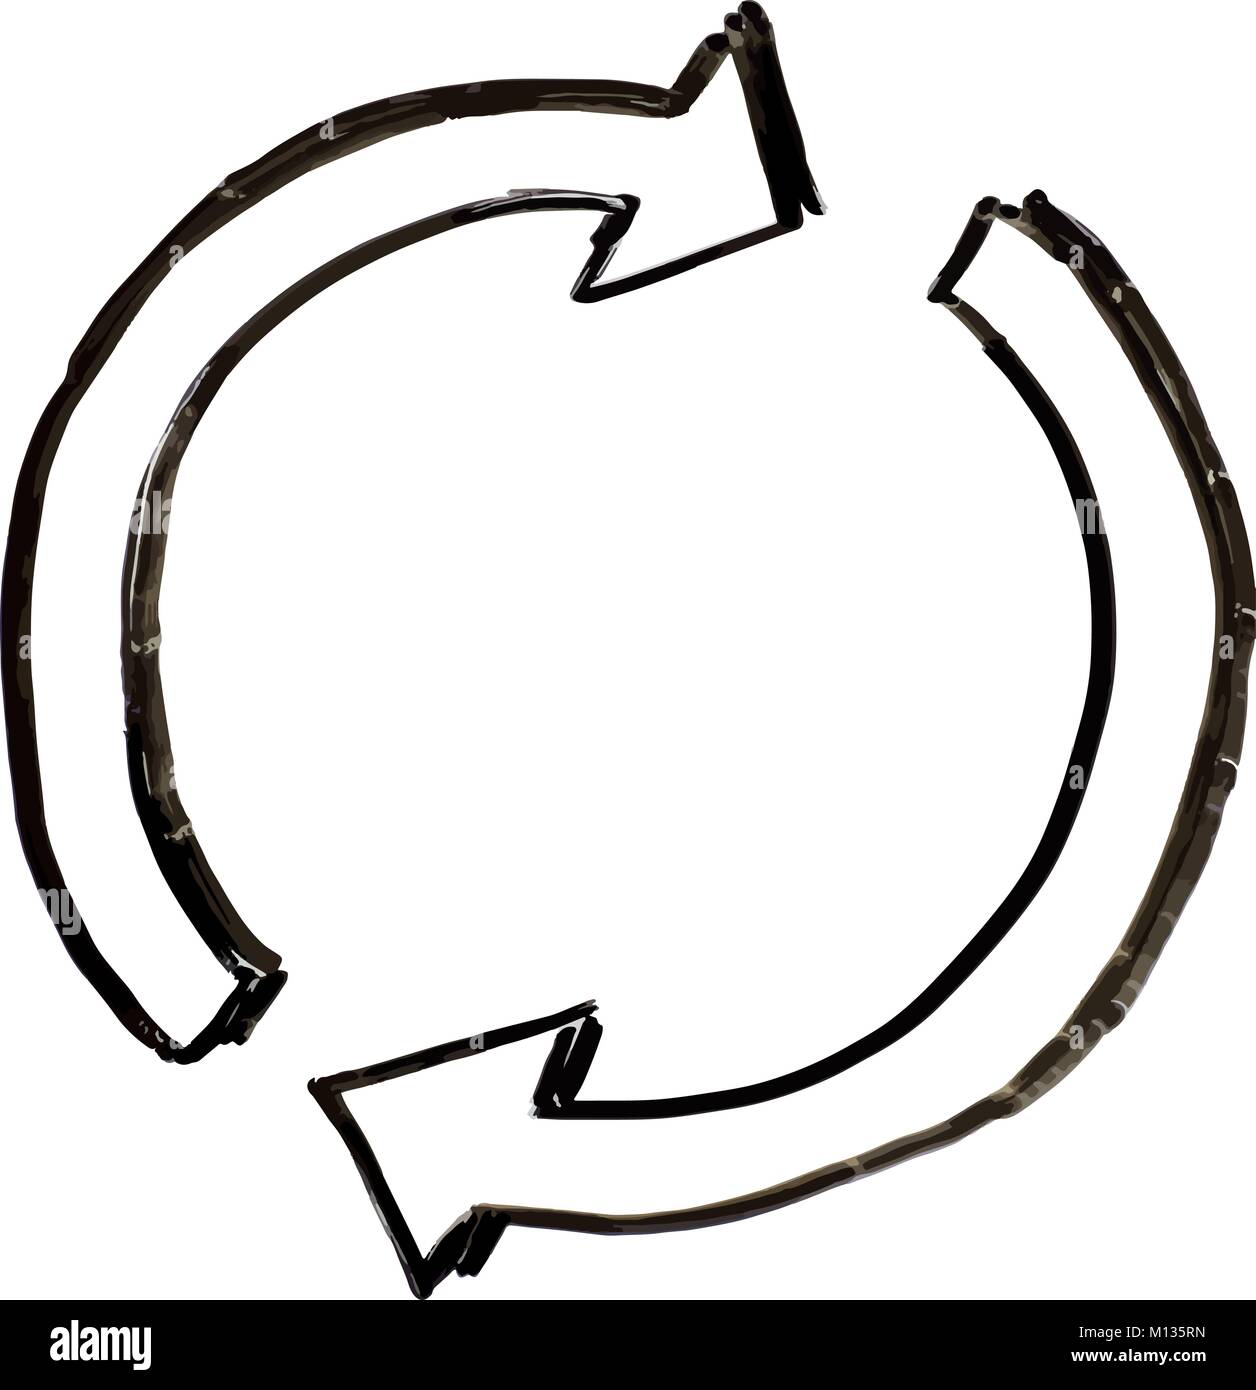 Eine Abbildung von zwei halbkreise mit Pfeilspitzen Drehen oder Drehen oder Drehen im Uhrzeigersinn im Stil einer weißen Tafel Zeichnung Stock Vektor